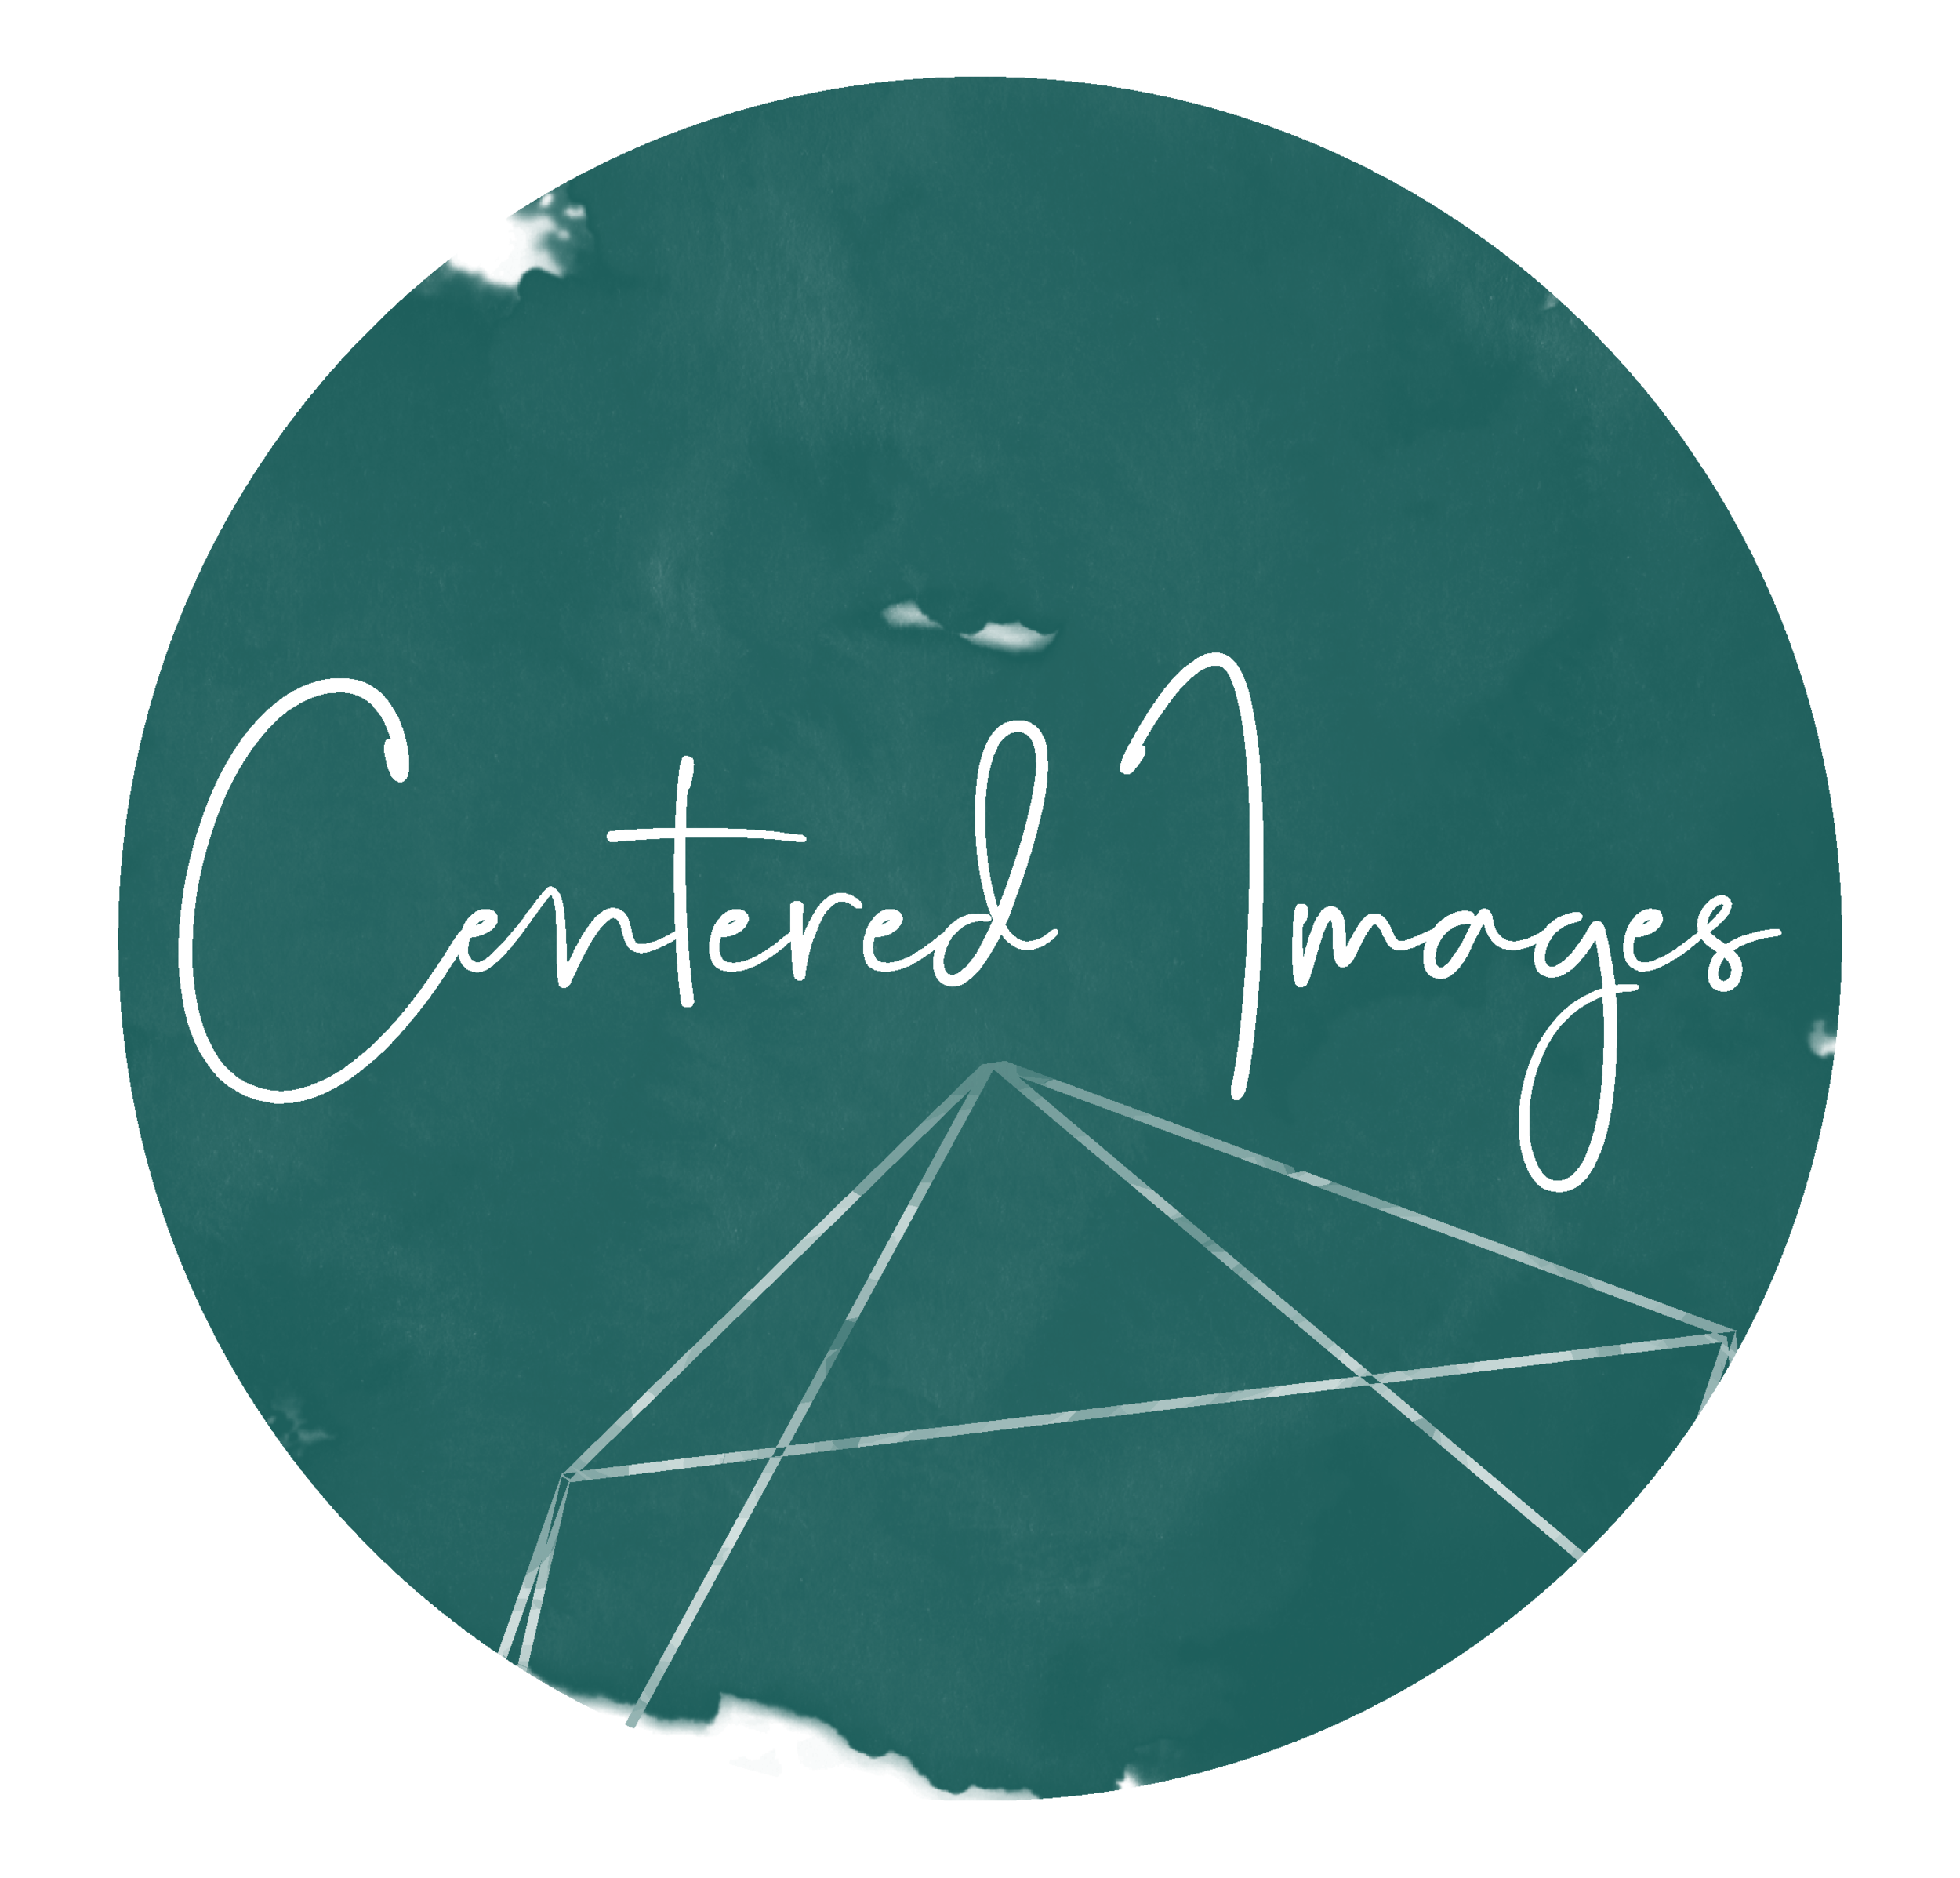 CenteredImages_Alternate_Green.png